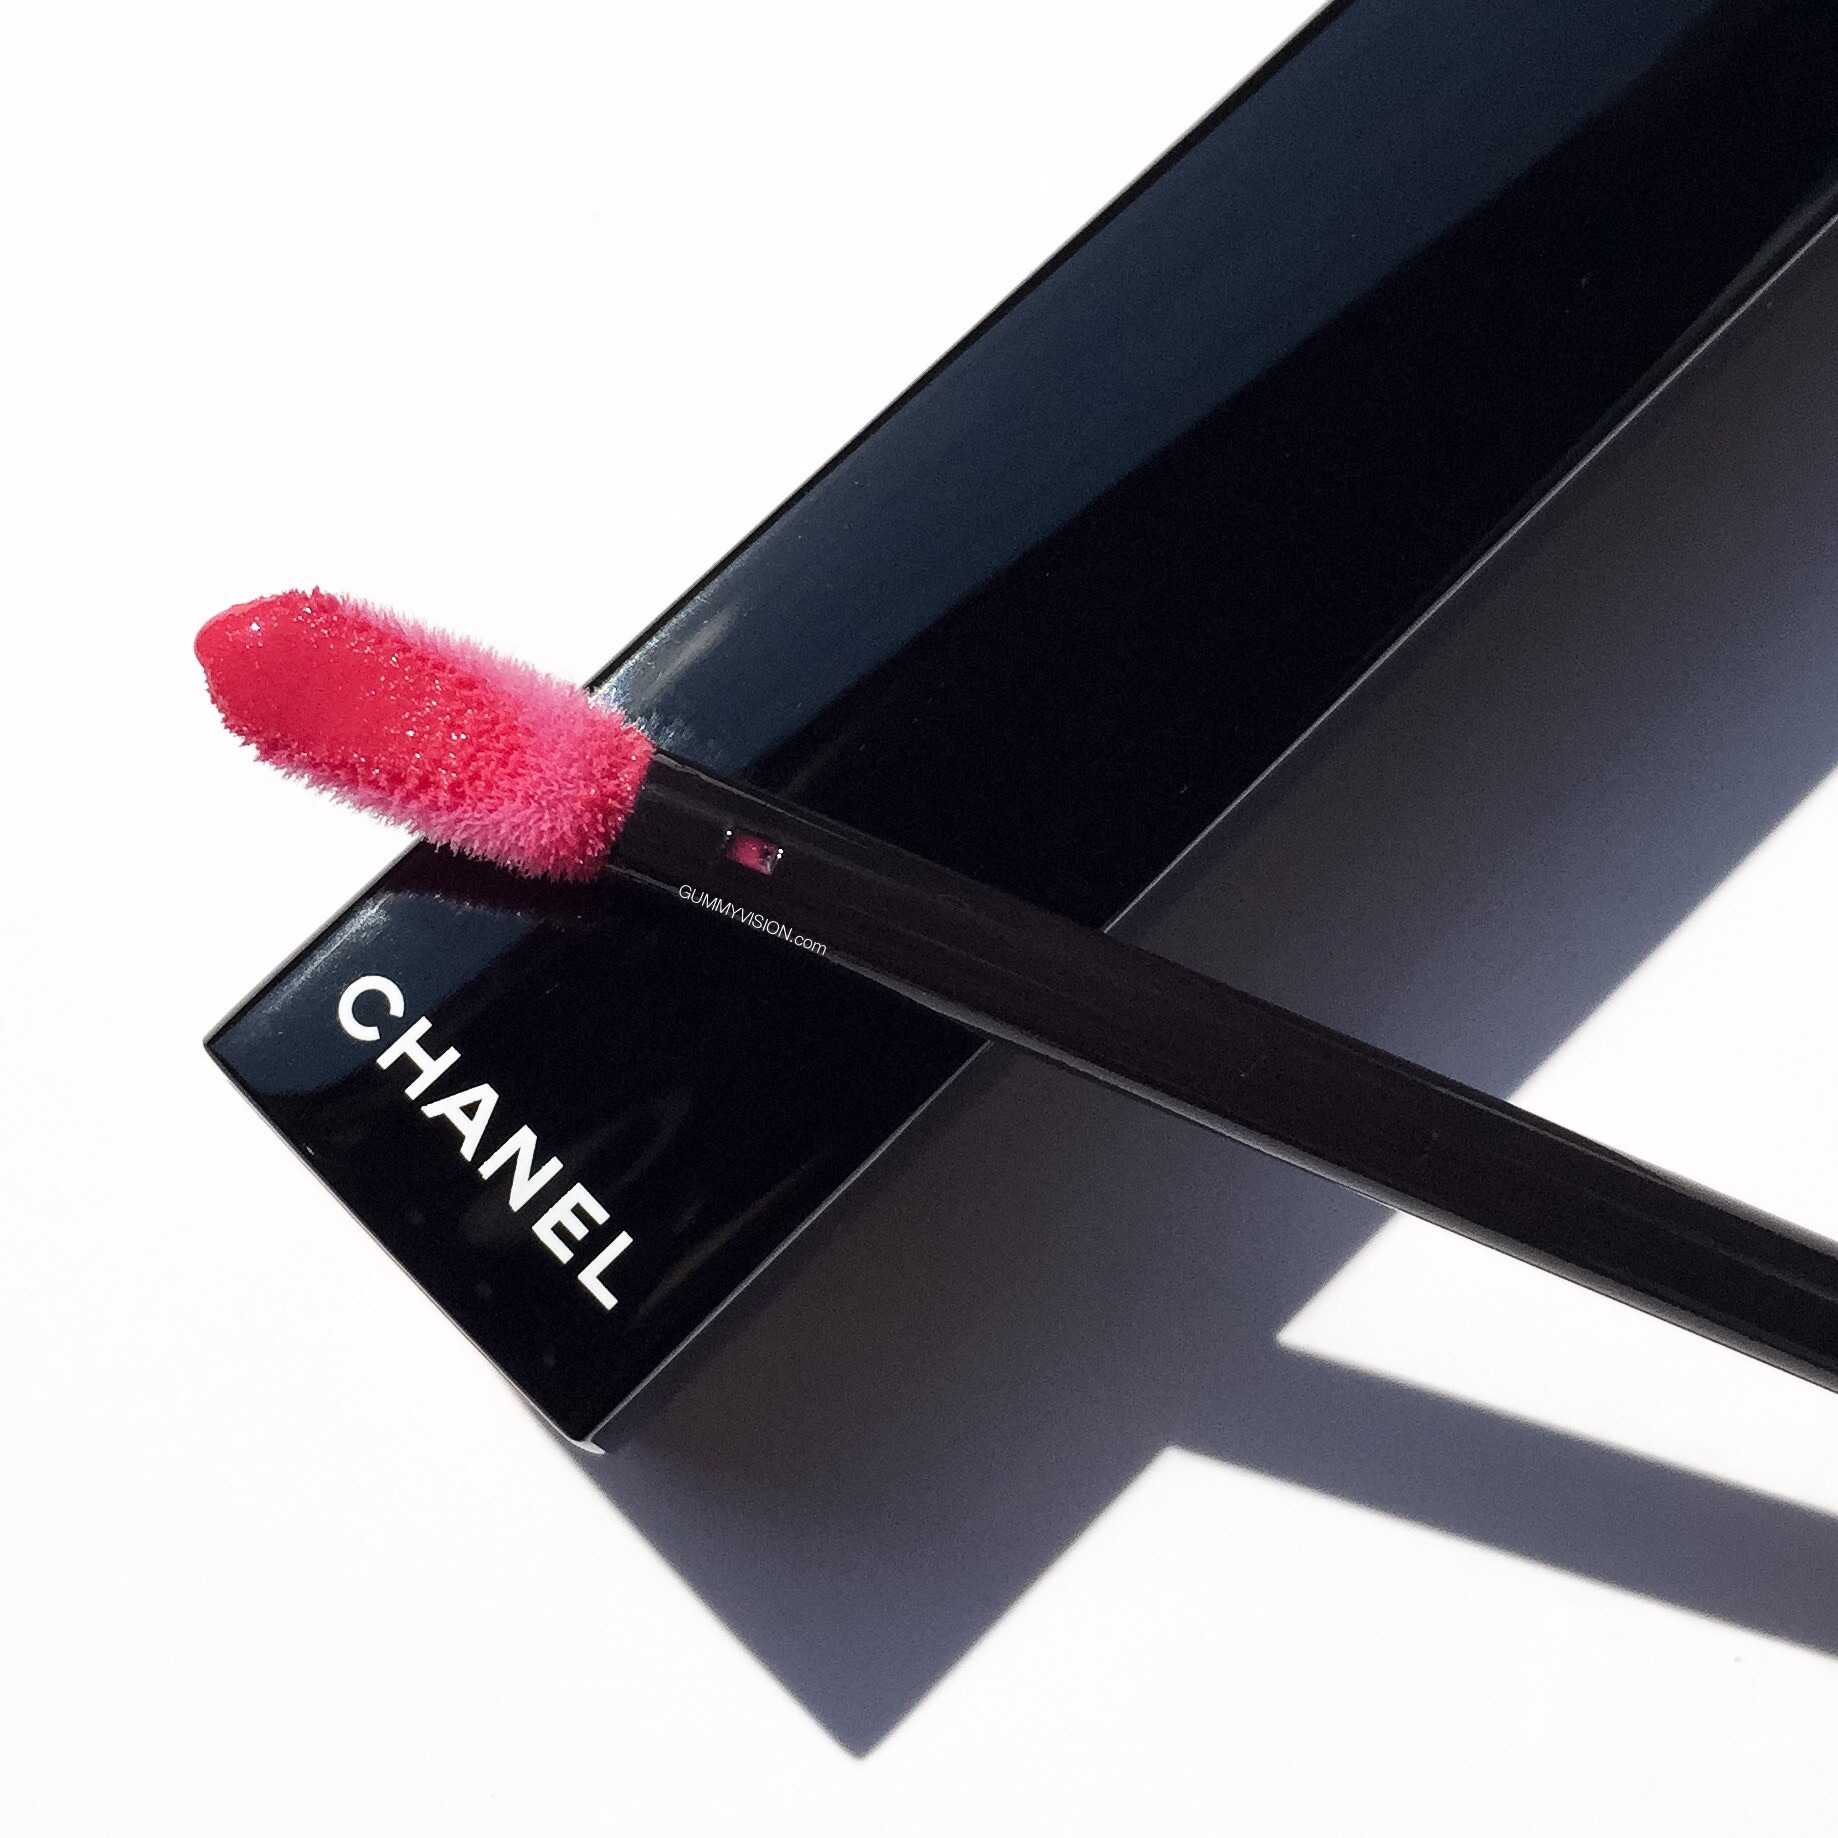 Chanel Rouge Allure Ink, 3 Noir Allure Mascara & 2 skincare